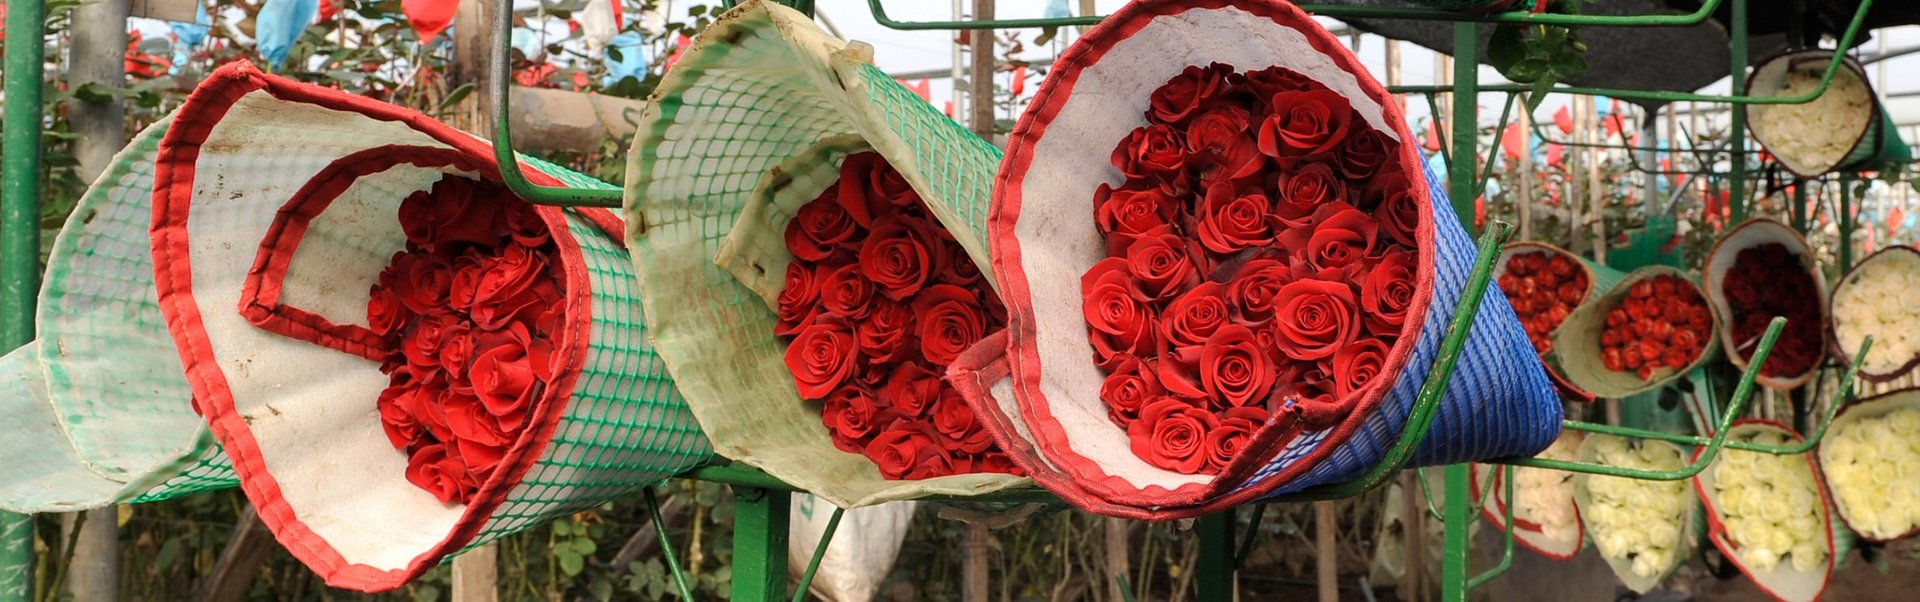 Mehrere Sträuße mit roten Rosen lagern nebeneinander